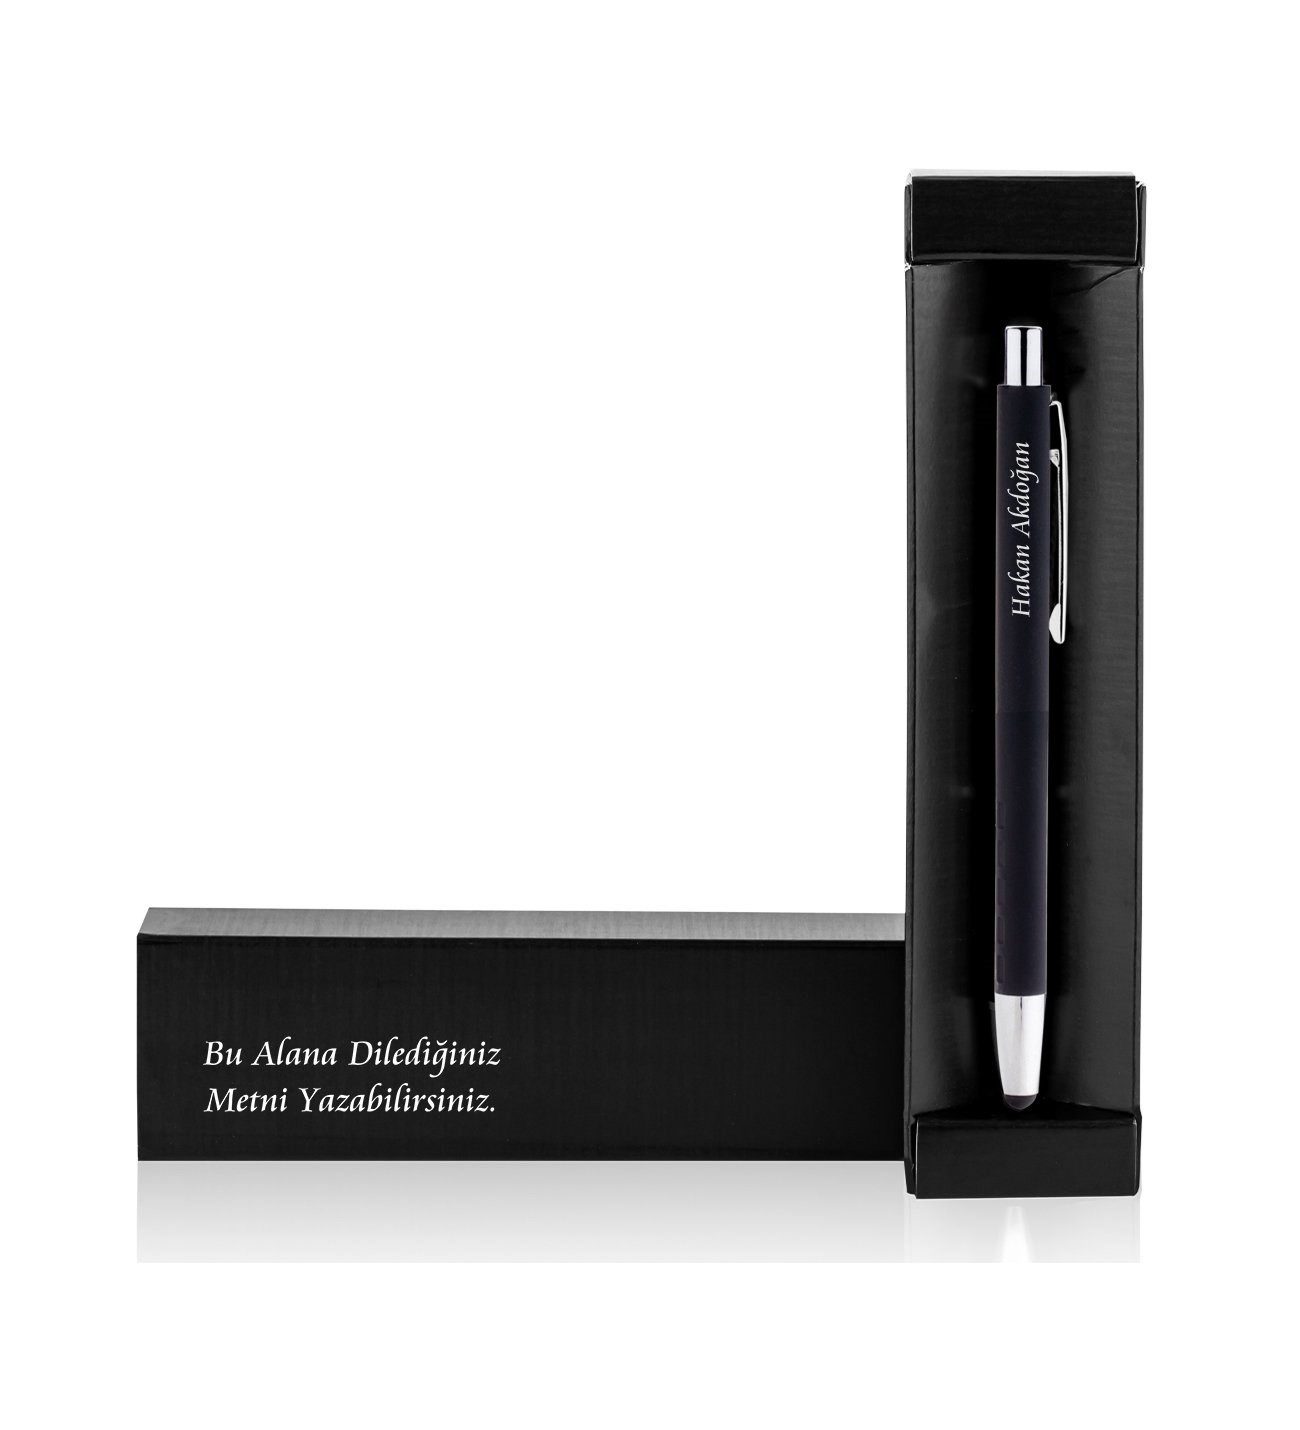 Kişiye Özel Touch Pen Özellikli Mesajlı Kutu ve Metal Kalem